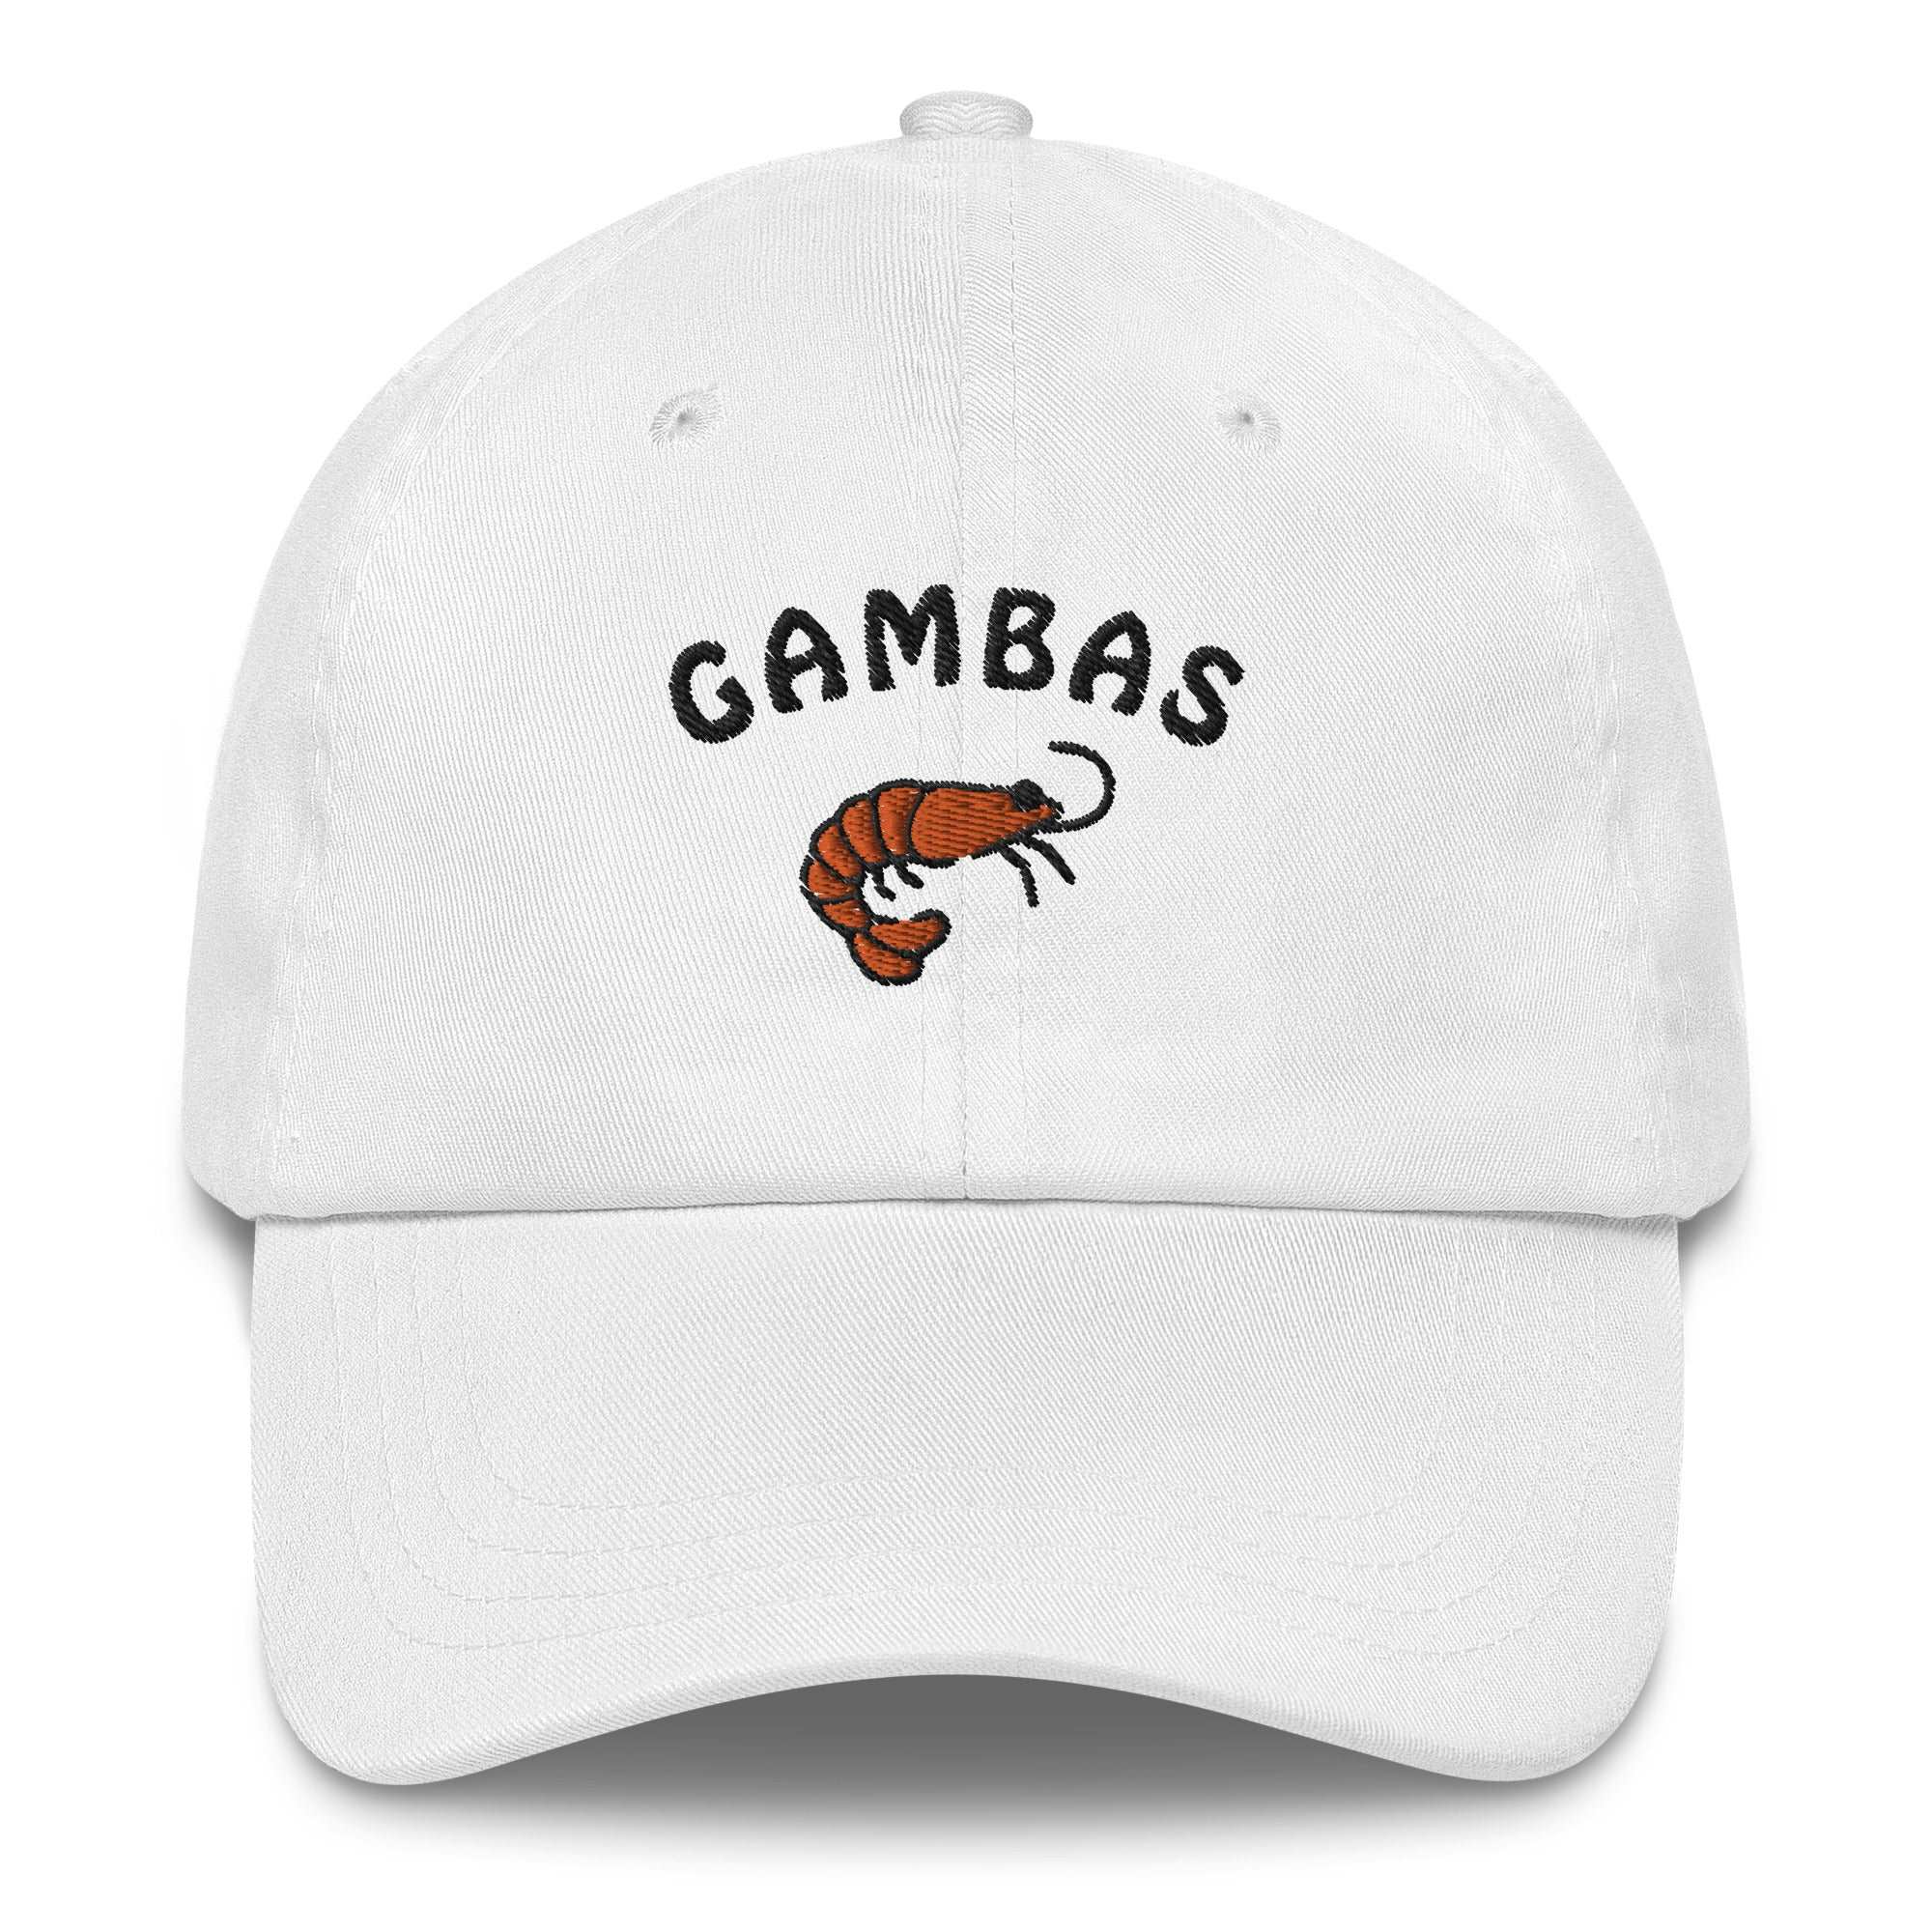 Gambas - Cap